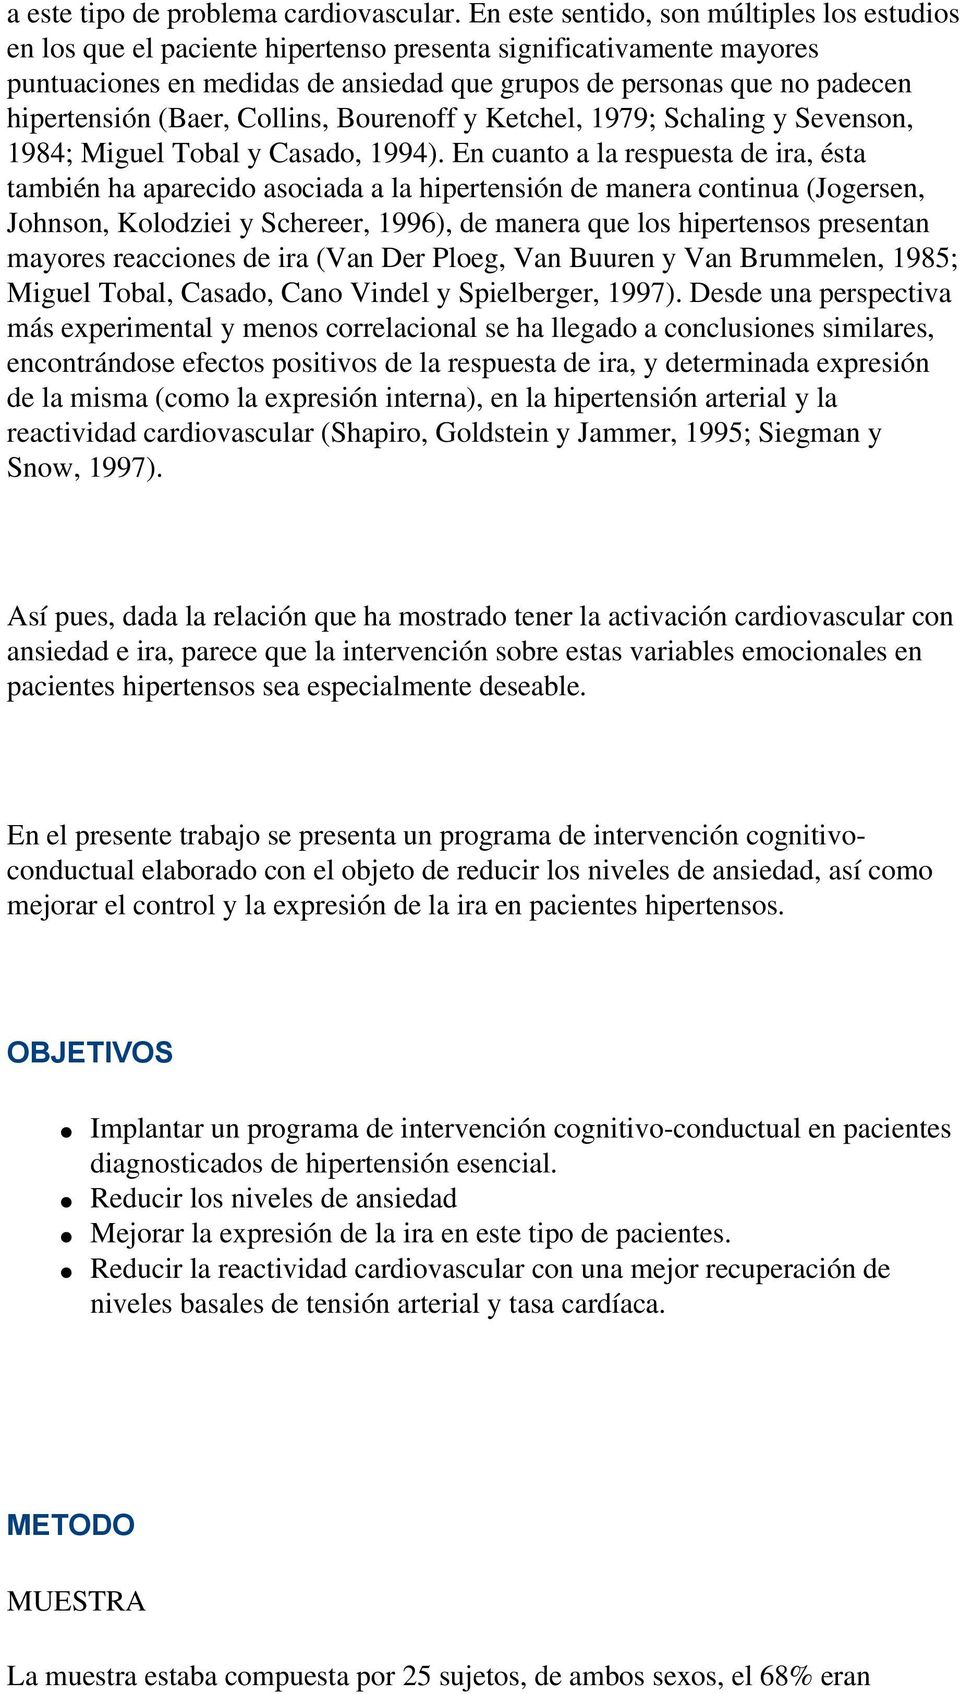 hipertensión (Baer, Collins, Bourenoff y Ketchel, 1979; Schaling y Sevenson, 1984; Miguel Tobal y Casado, 1994).